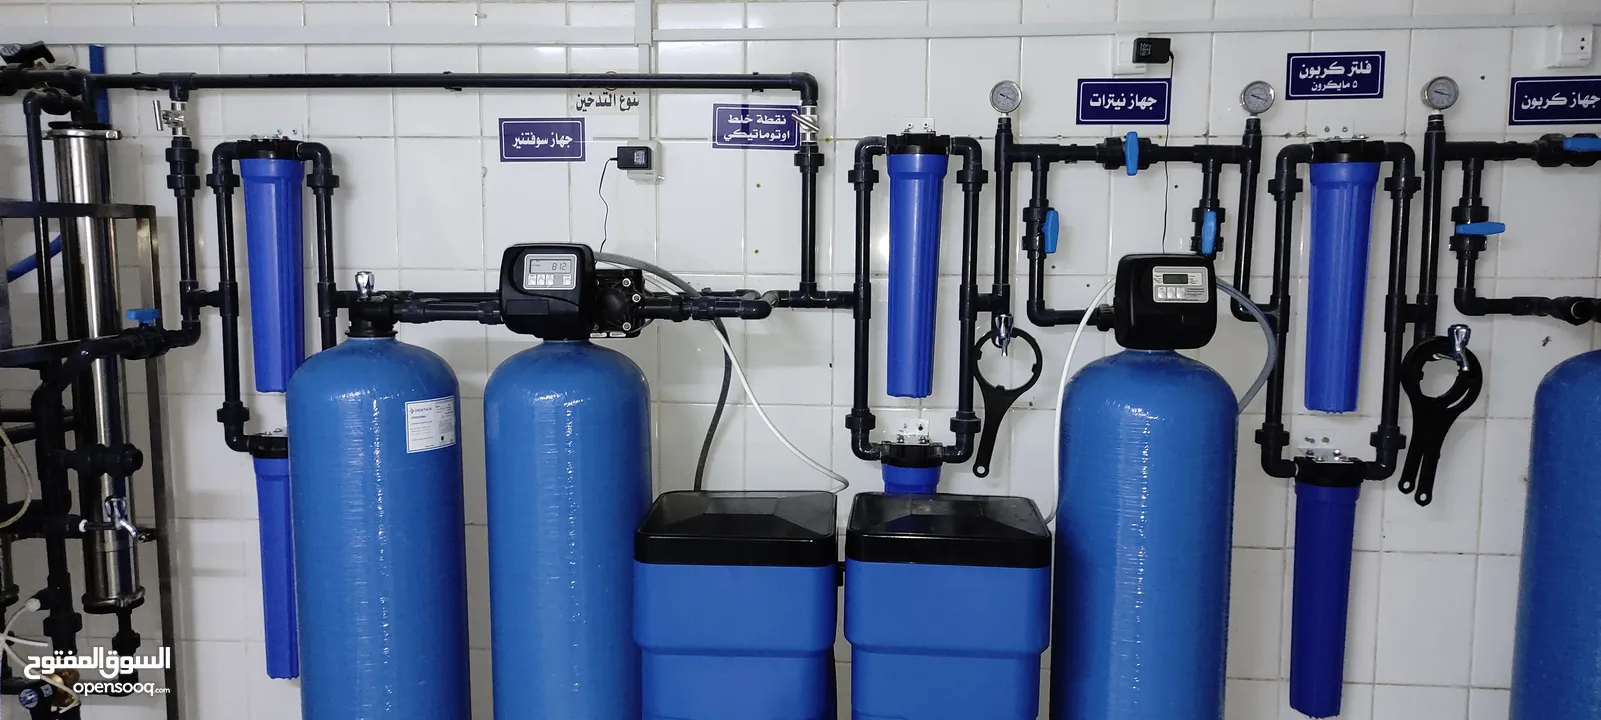 فلاتر مياه منزلية تركيب محطات مياه وصيانة انظمة الفلاتر والمحطات